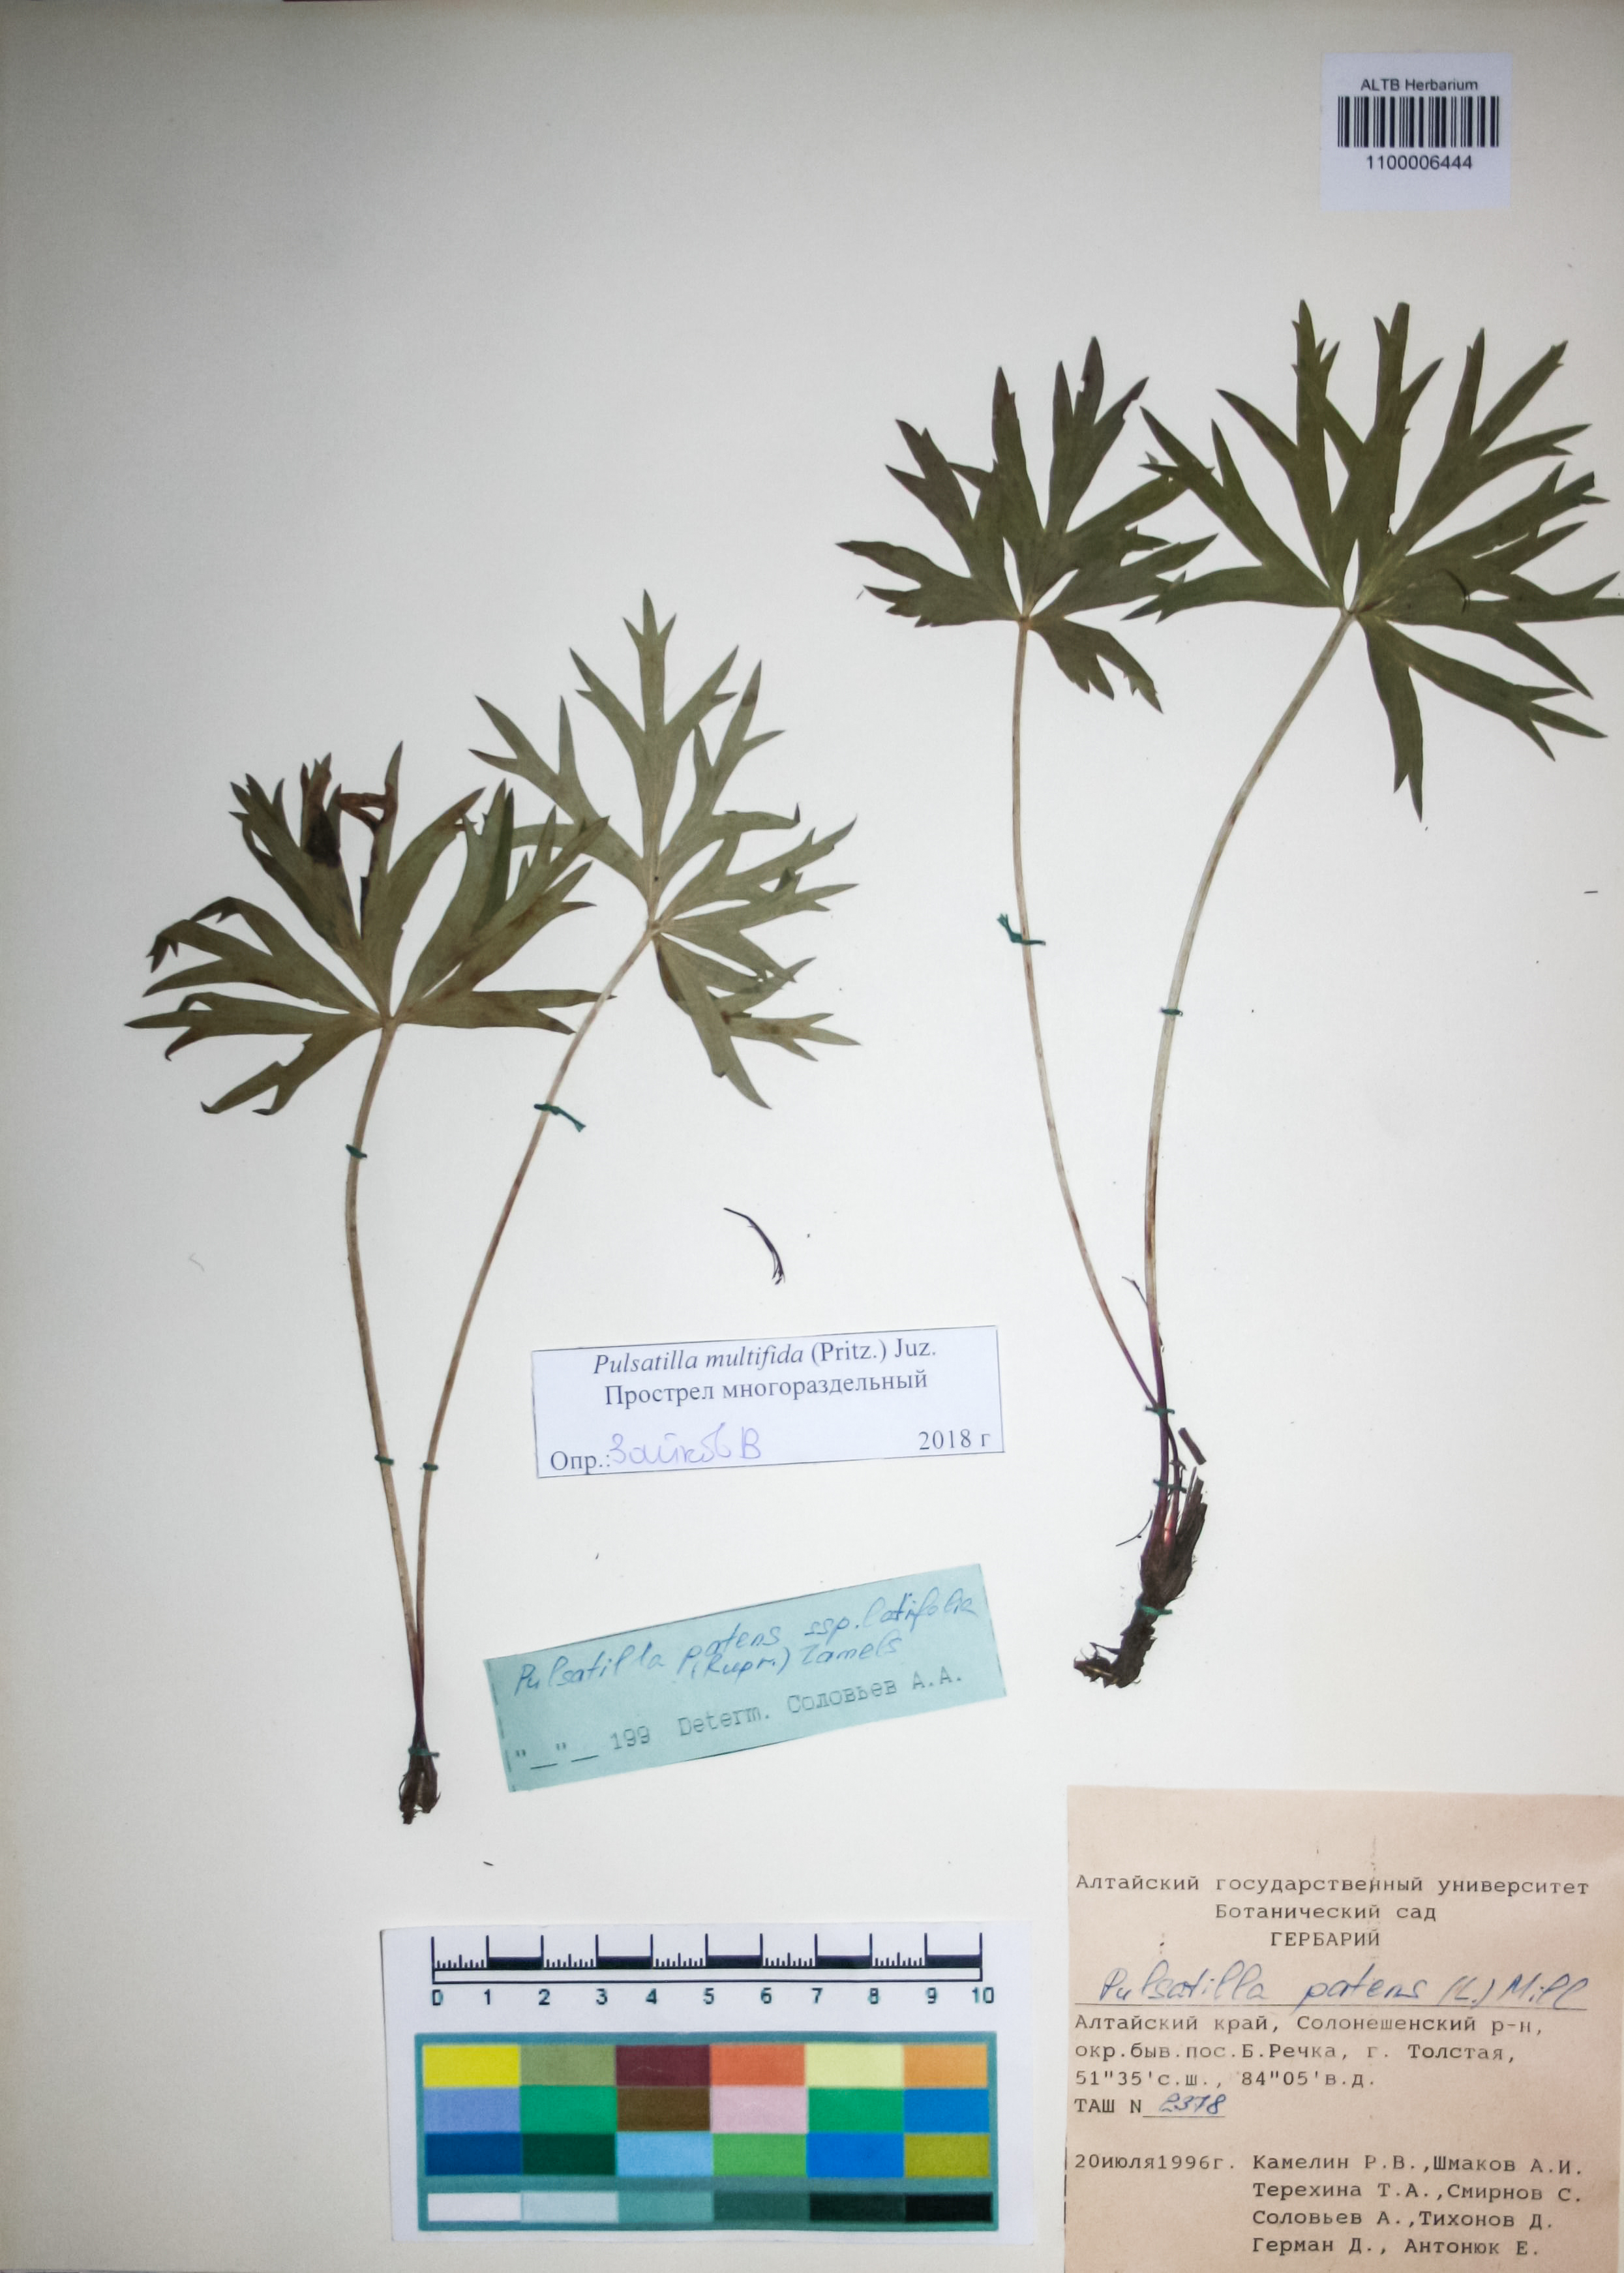 Ranunculaceae,Pulsatilla multifida (Pritz.) Juz.